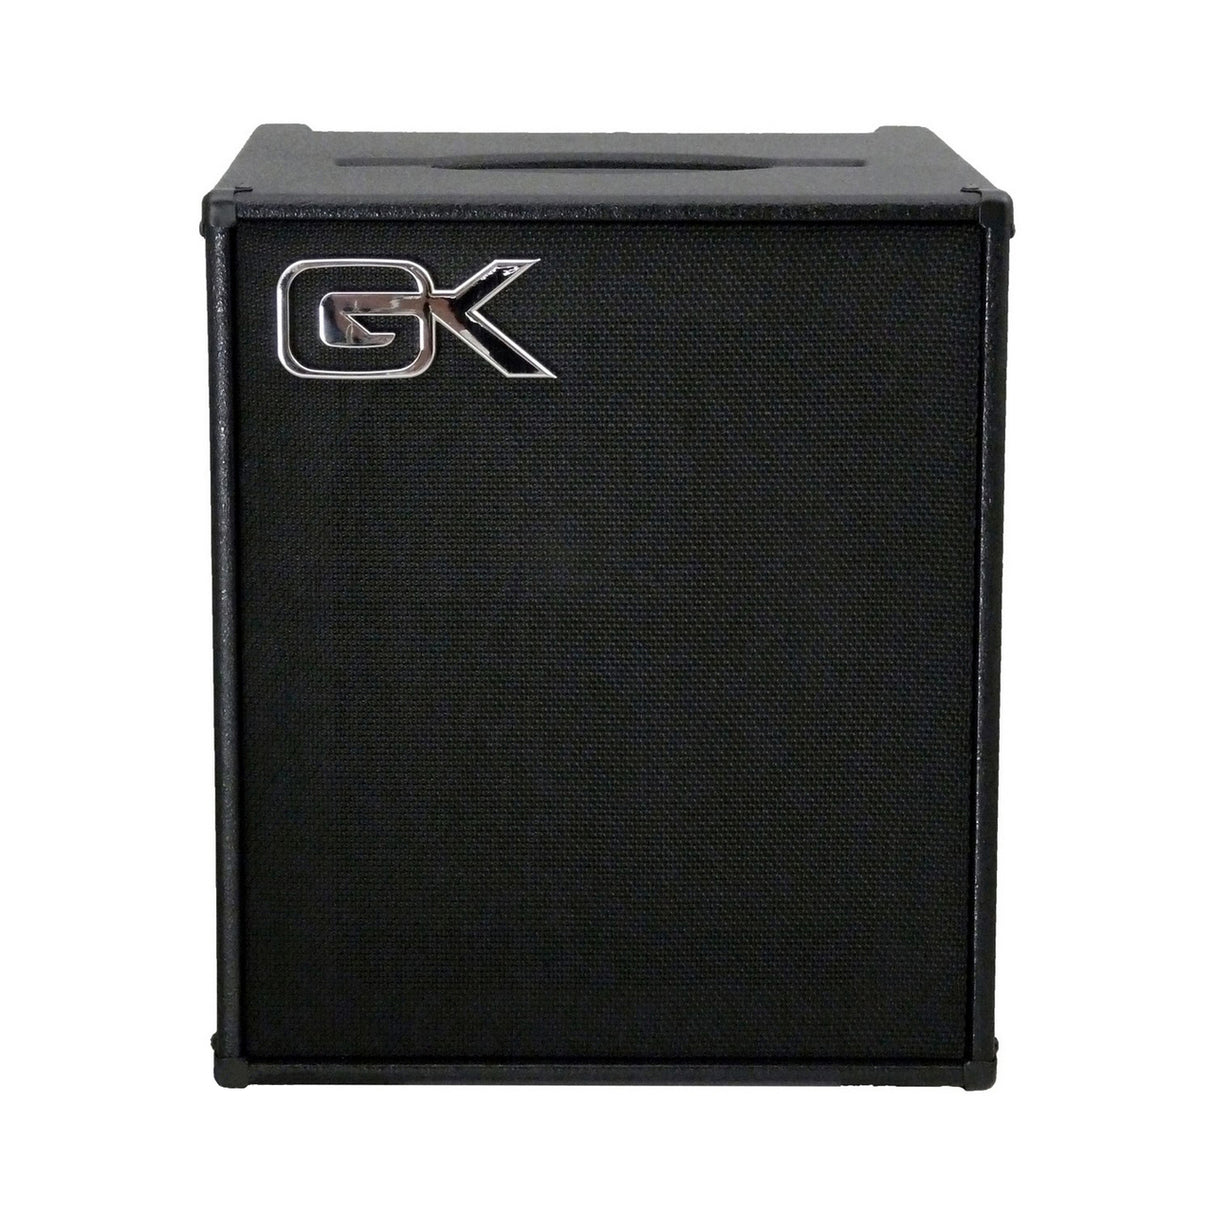 Gallien-Krueger MB112II 200 Watts 1x12" Ultra Light Bass Combo Amps